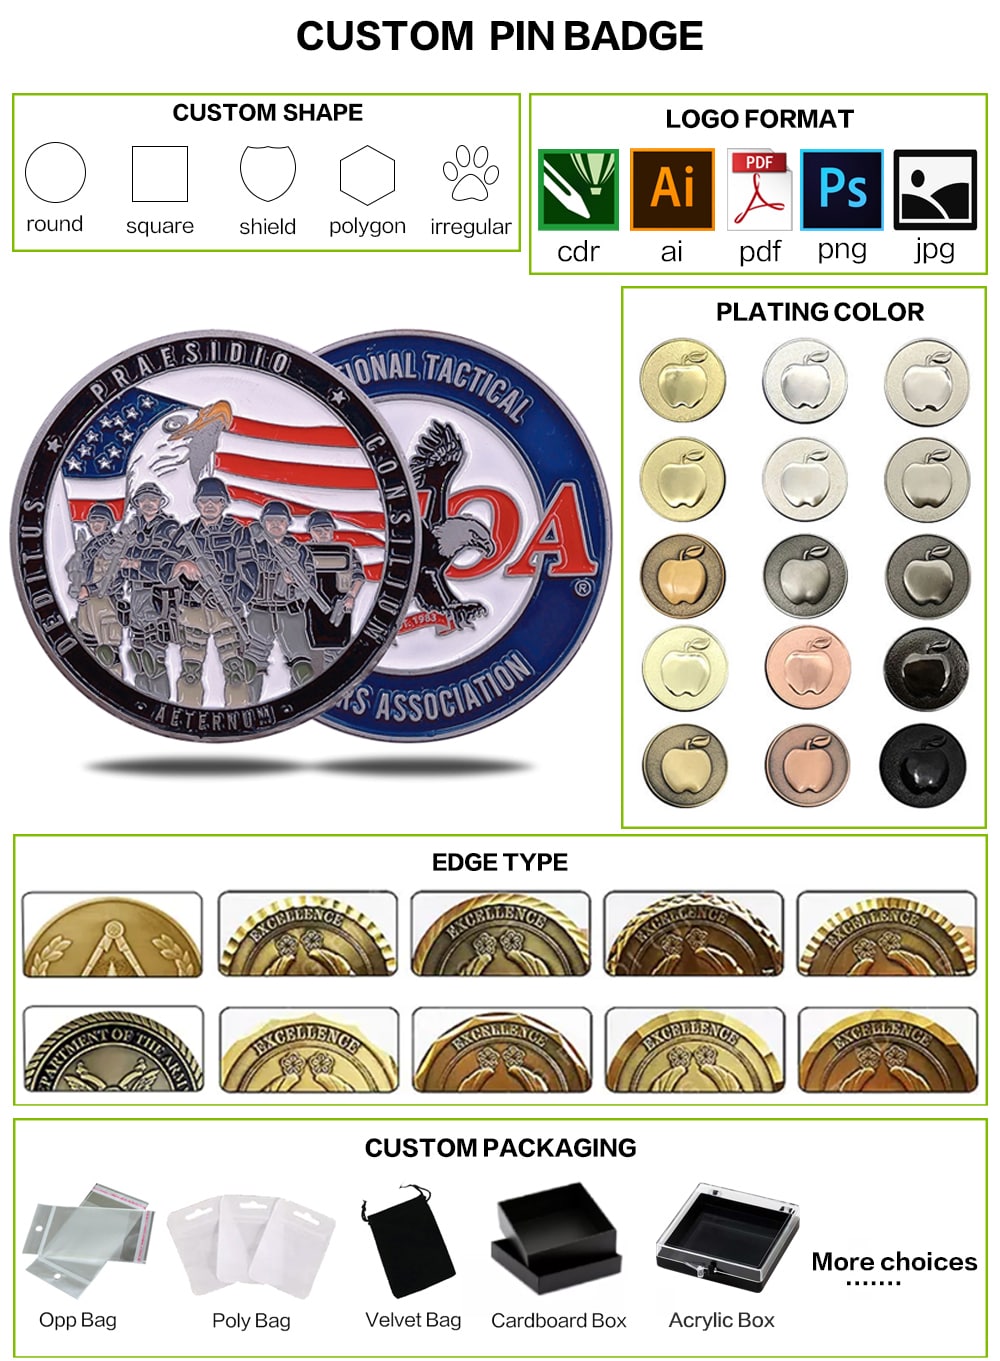 軍事チャレンジコイン